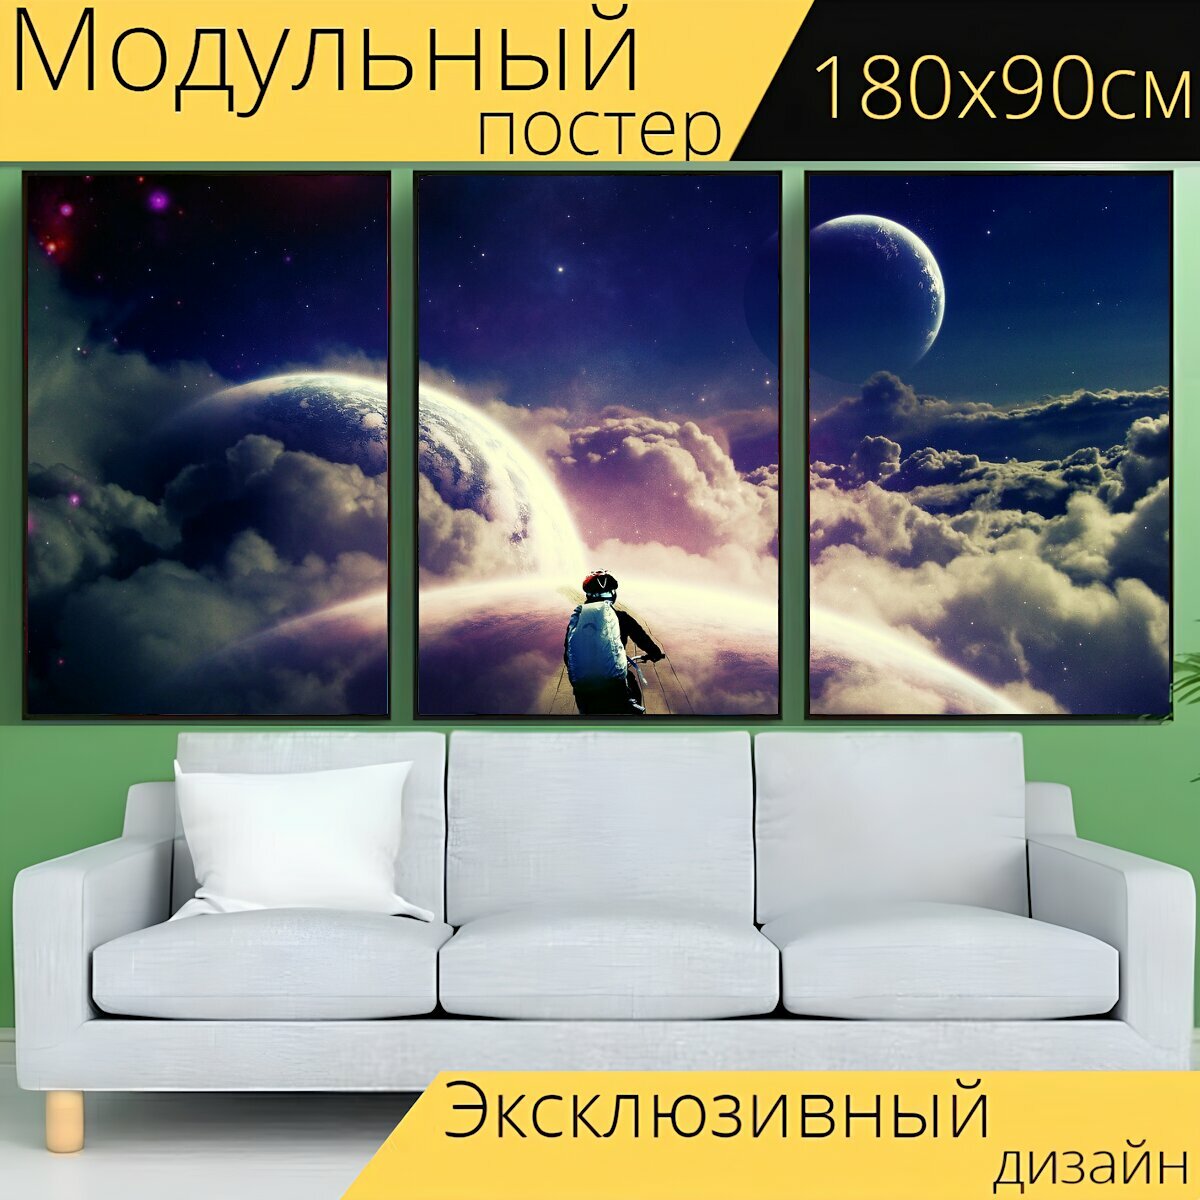 Модульный постер "Пространство, космос, астрономический" 180 x 90 см. для интерьера